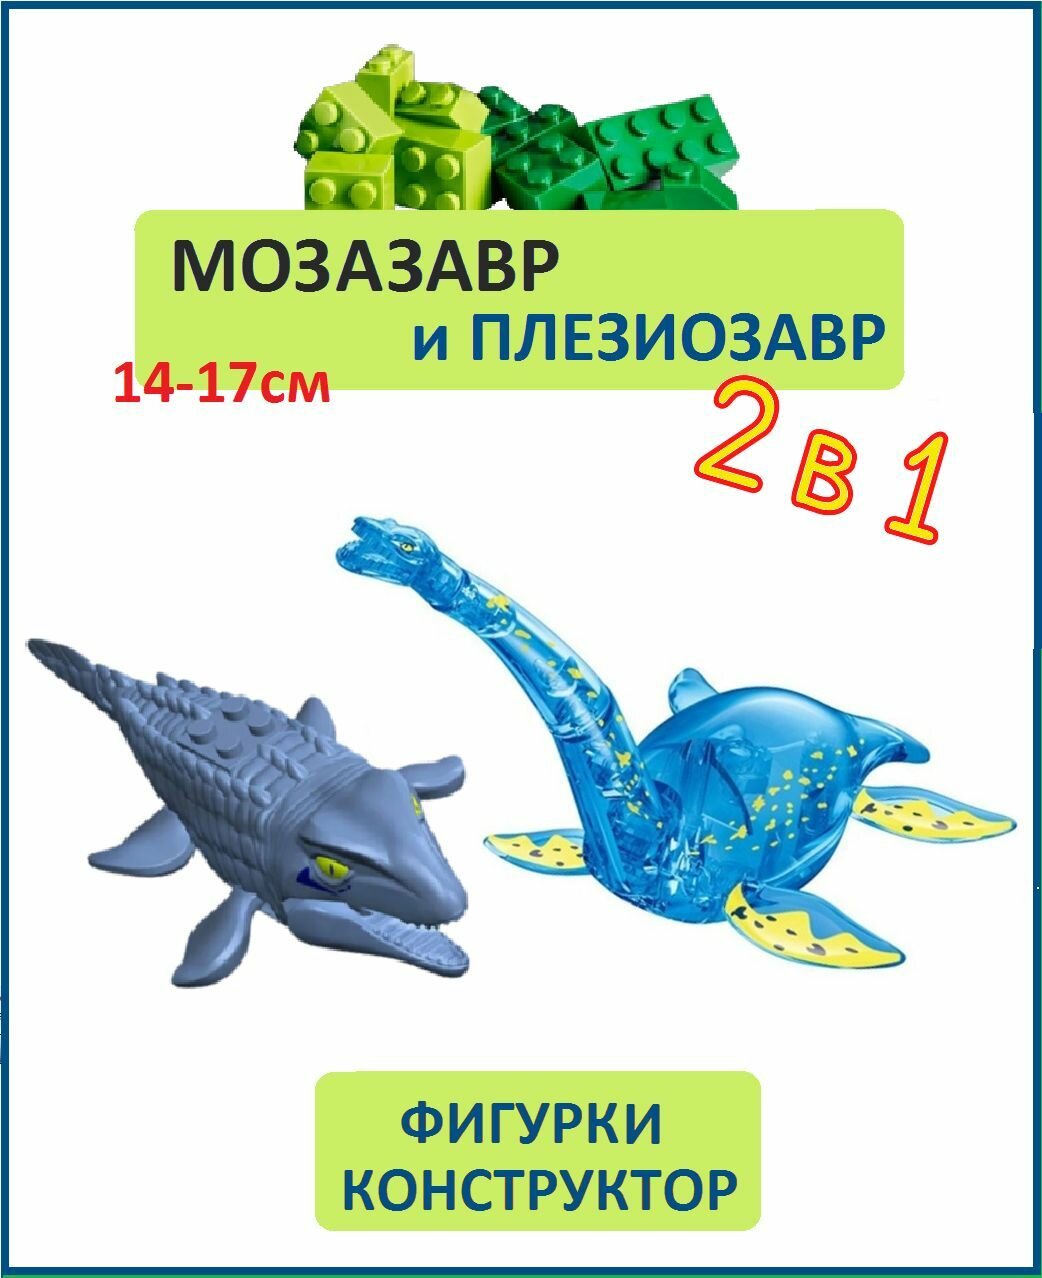 Плезиозавр голубой и Мозазавр серый, 2 шт, фигурки конструктор, серия Водные динозавры